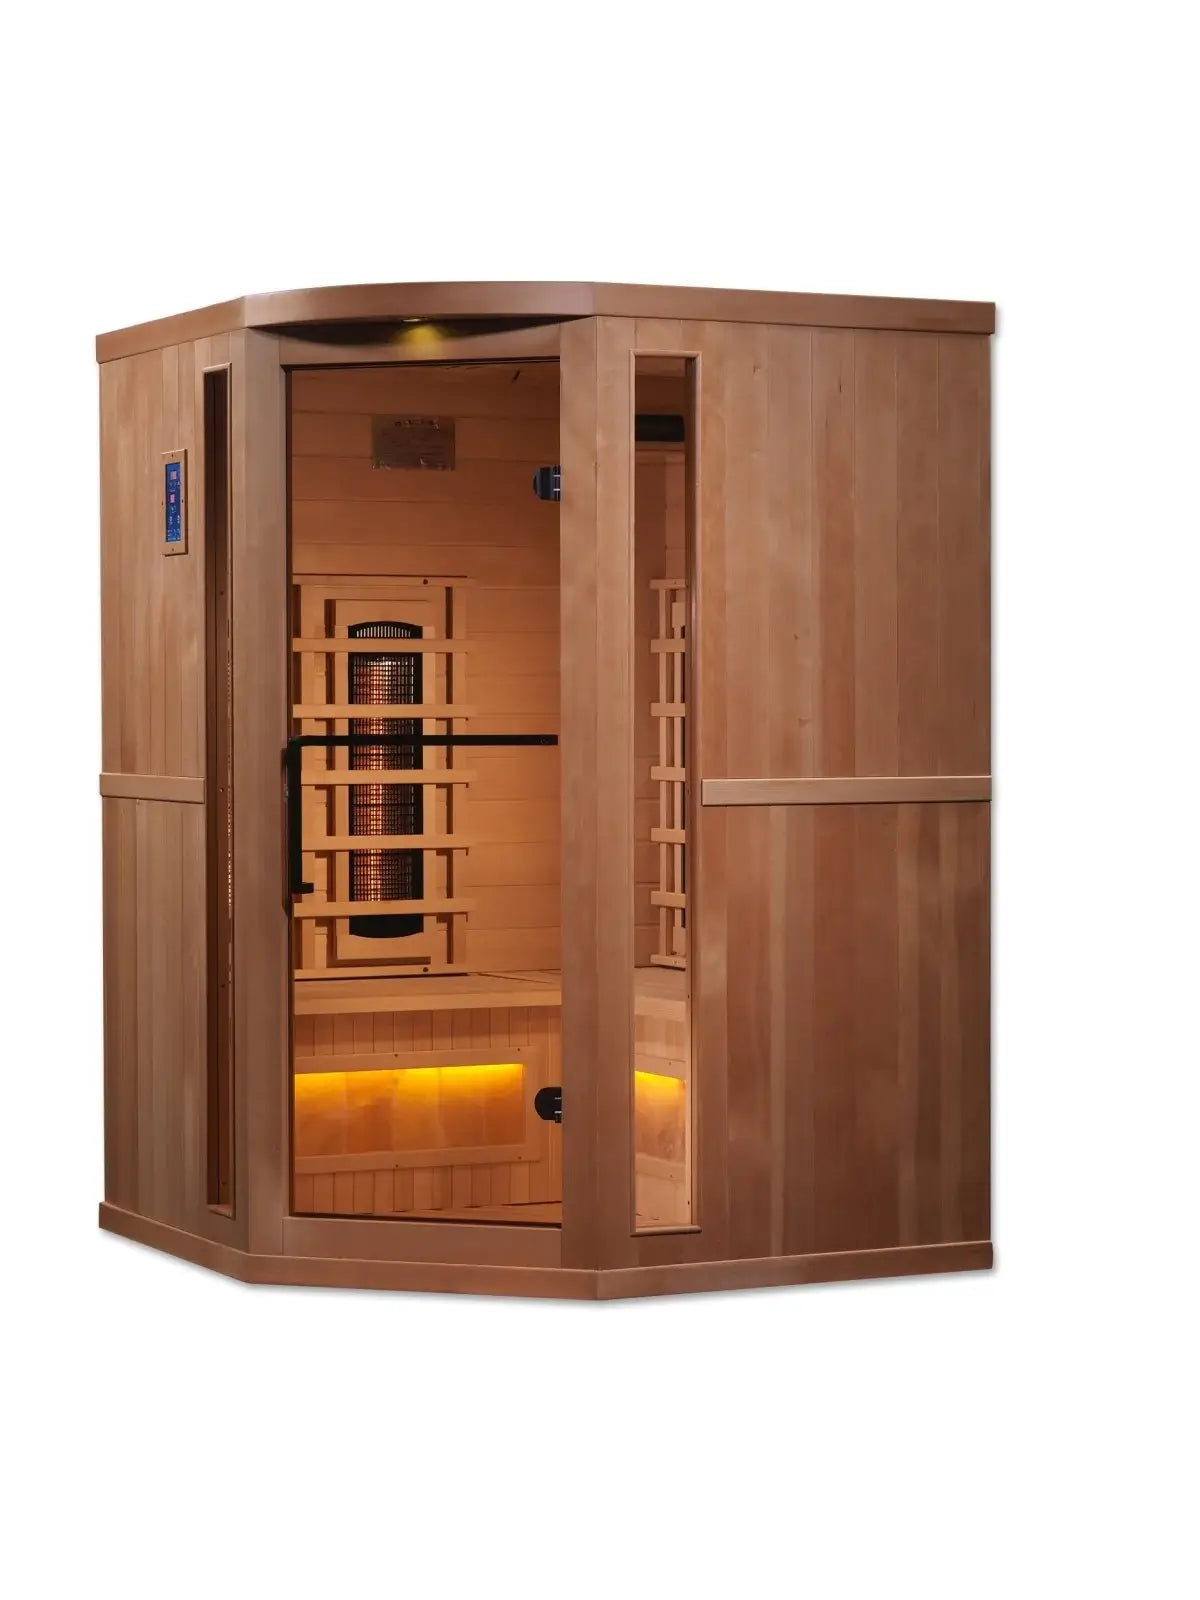 GDI-8035-02 Infrared Sauna Golden Designs Corner Unit